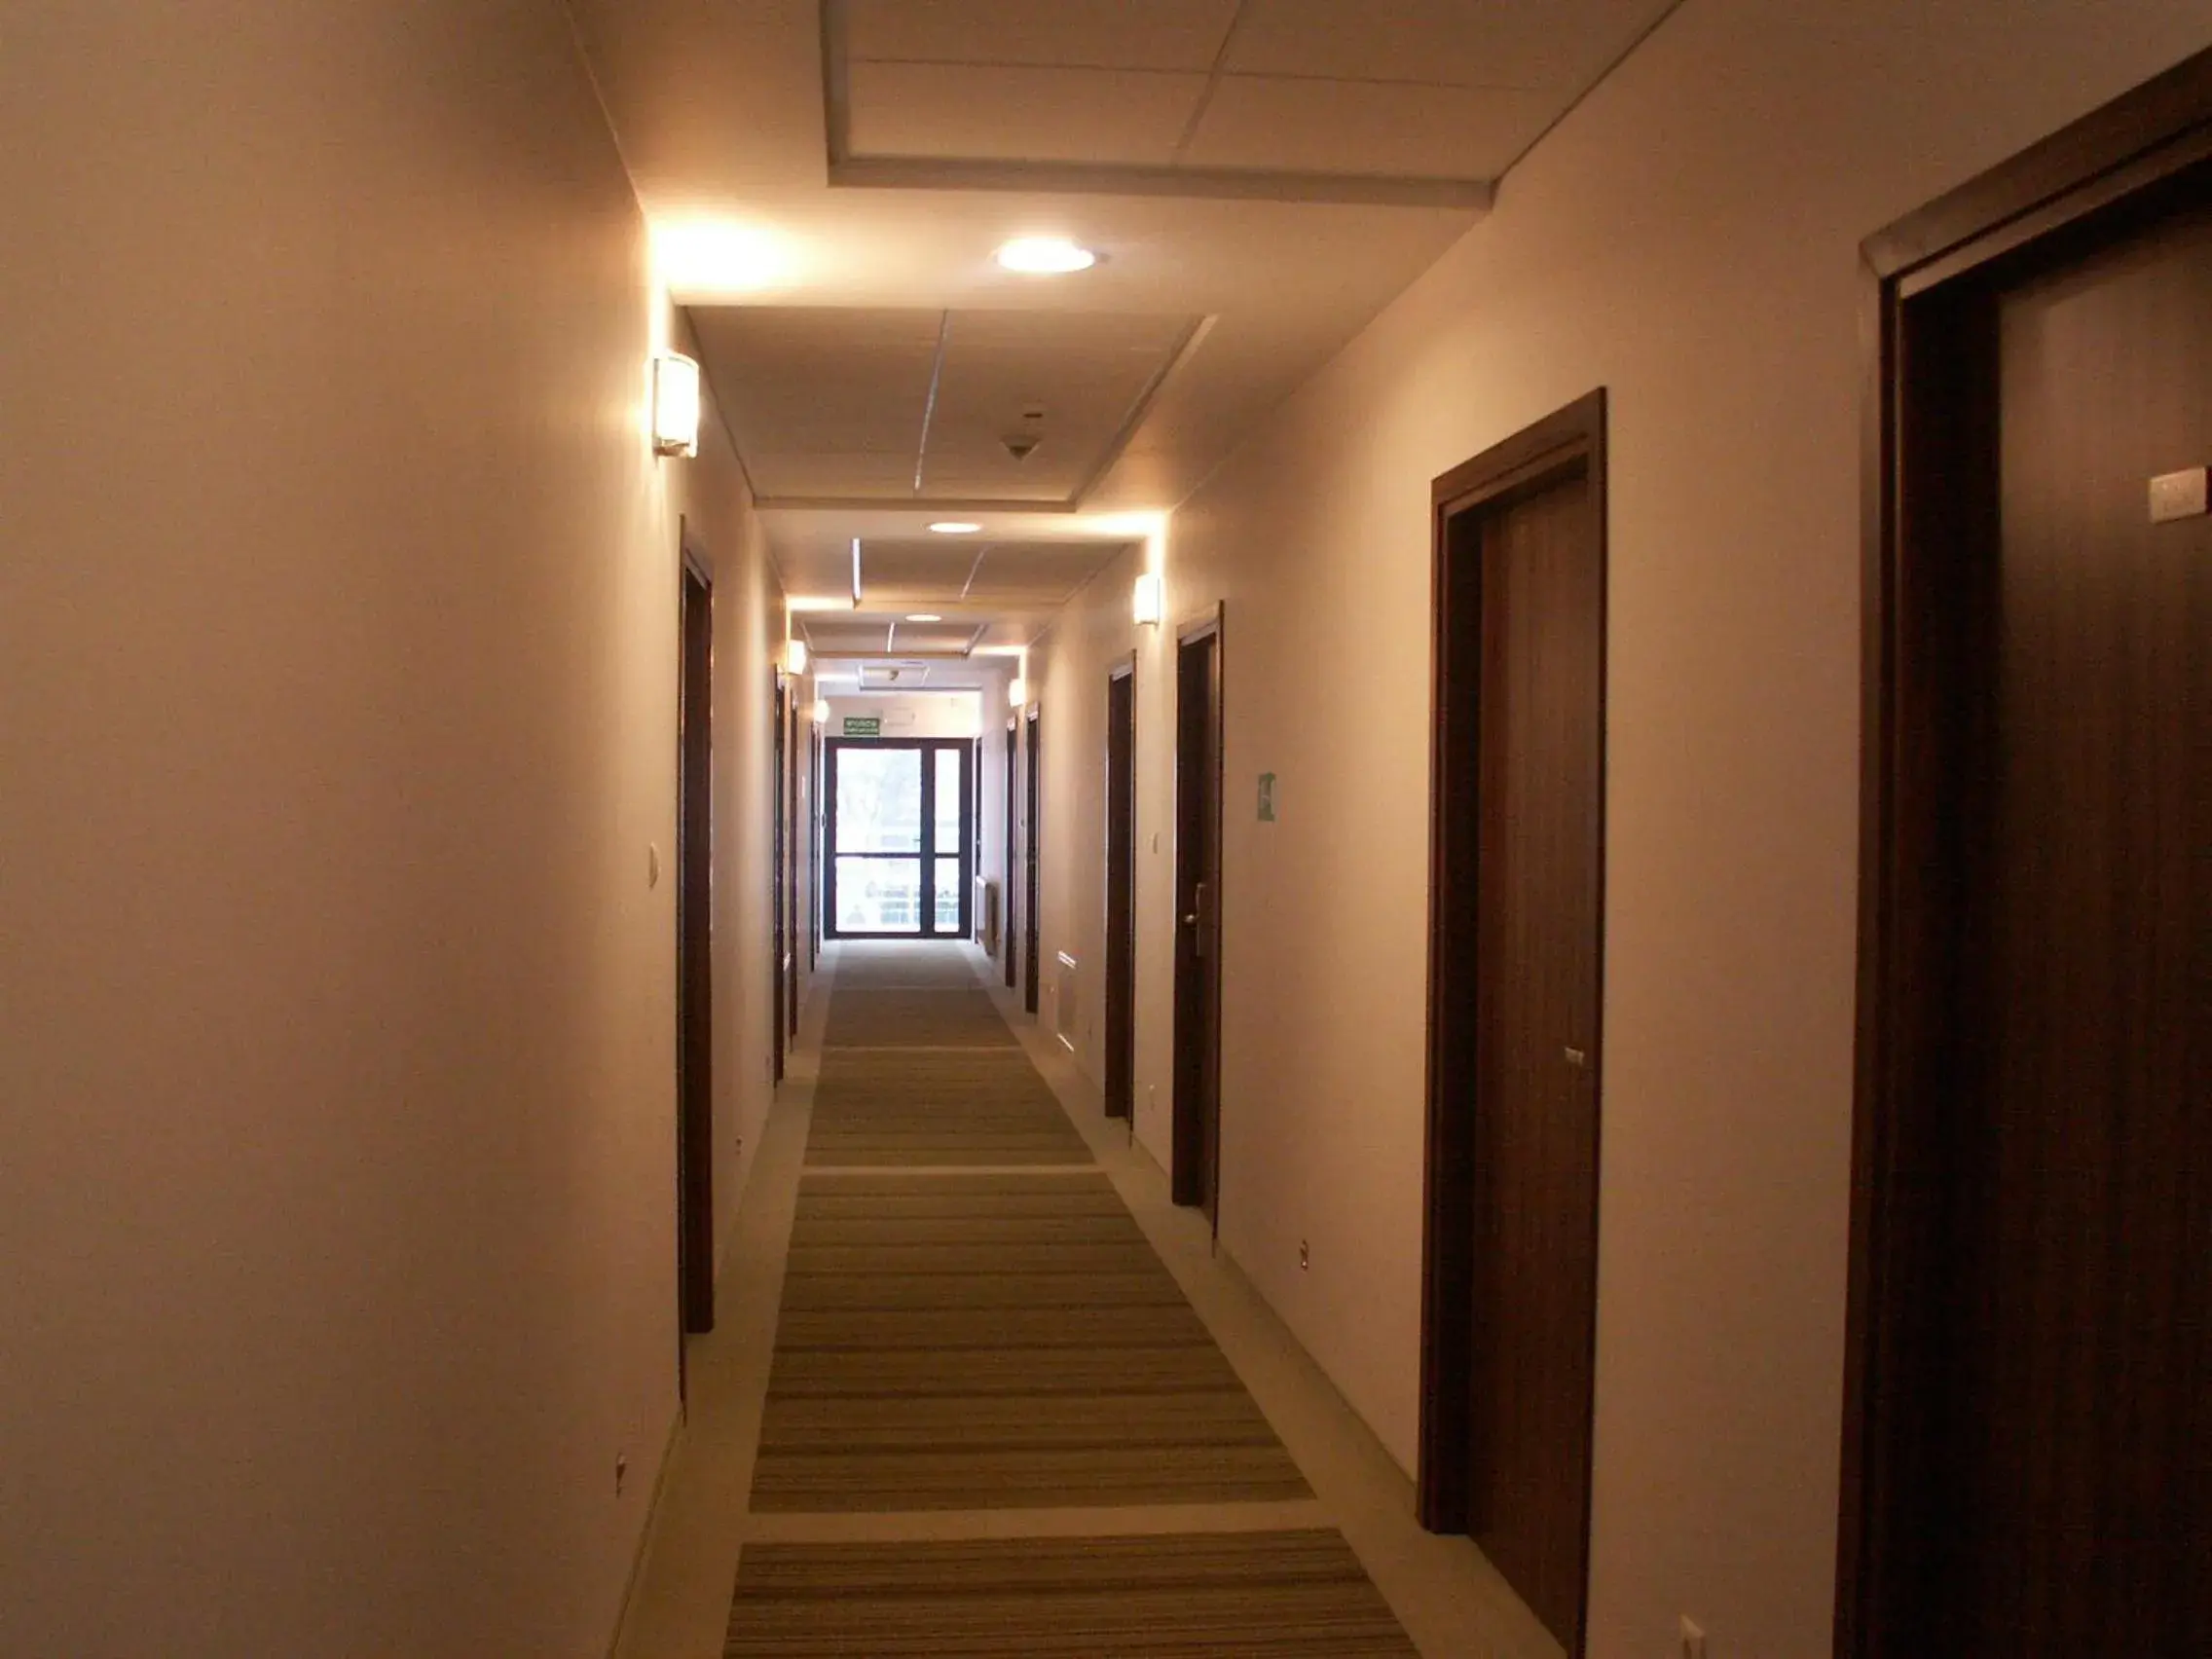 Lobby or reception in Hotel Pod Dębem